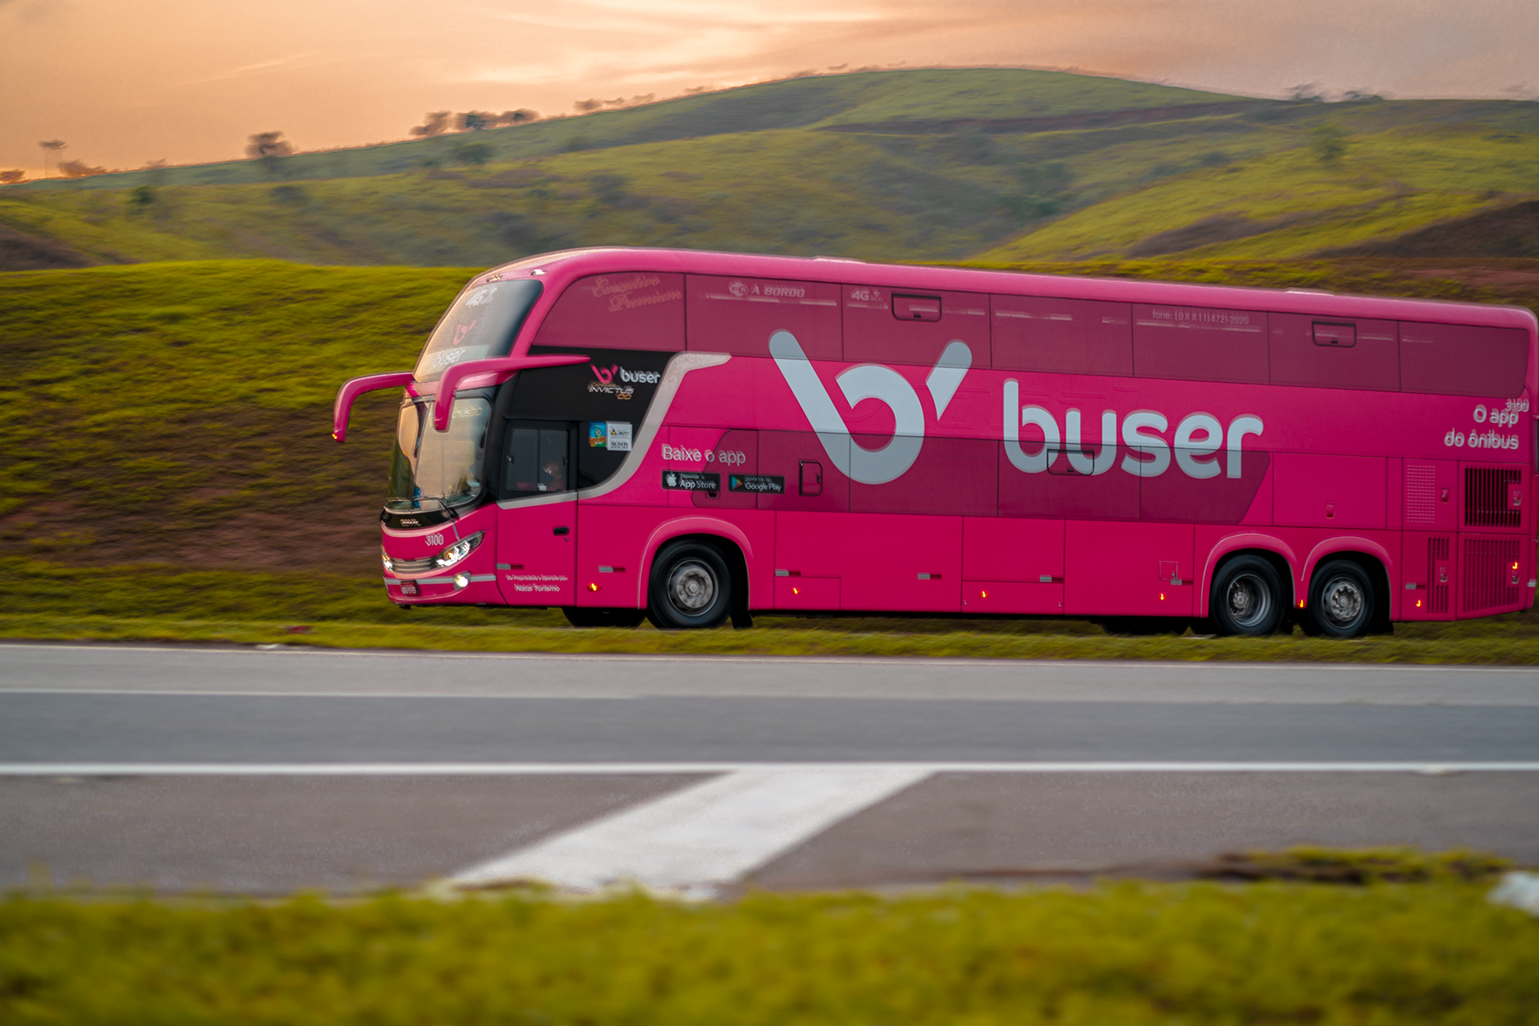 Na Semana do Consumidor, os novos clientes da Buser ganham até 40% de desconto na compra de passagens